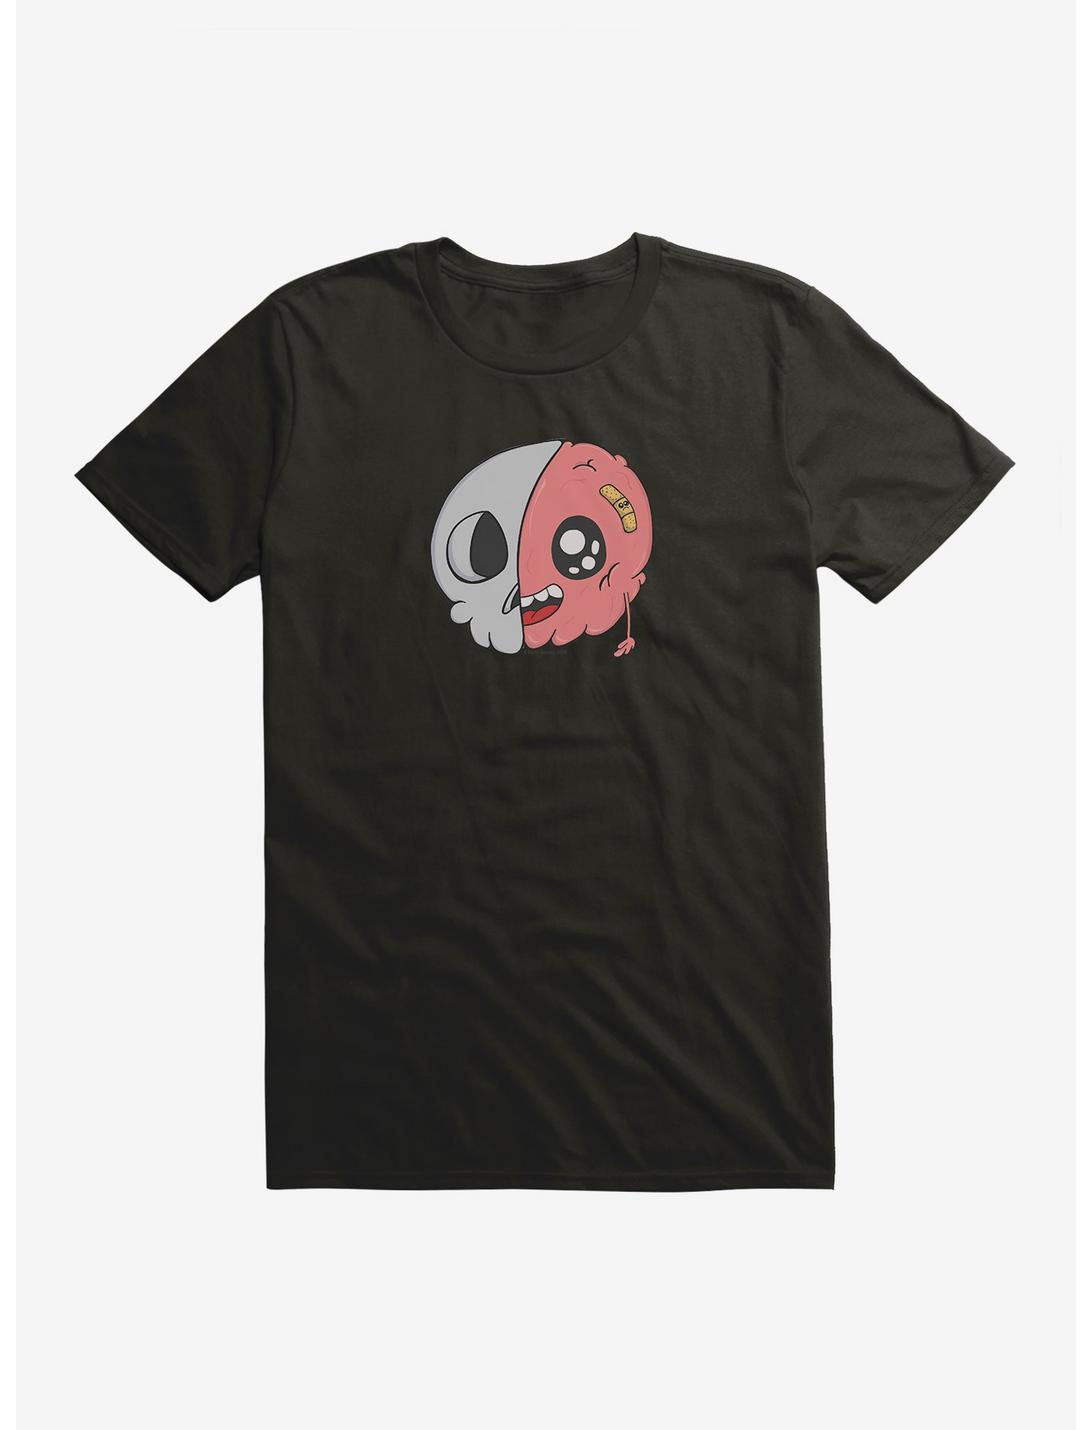 Depressed Monsters Half Brain T-Shirt By Ryan Brunty, BLACK, hi-res